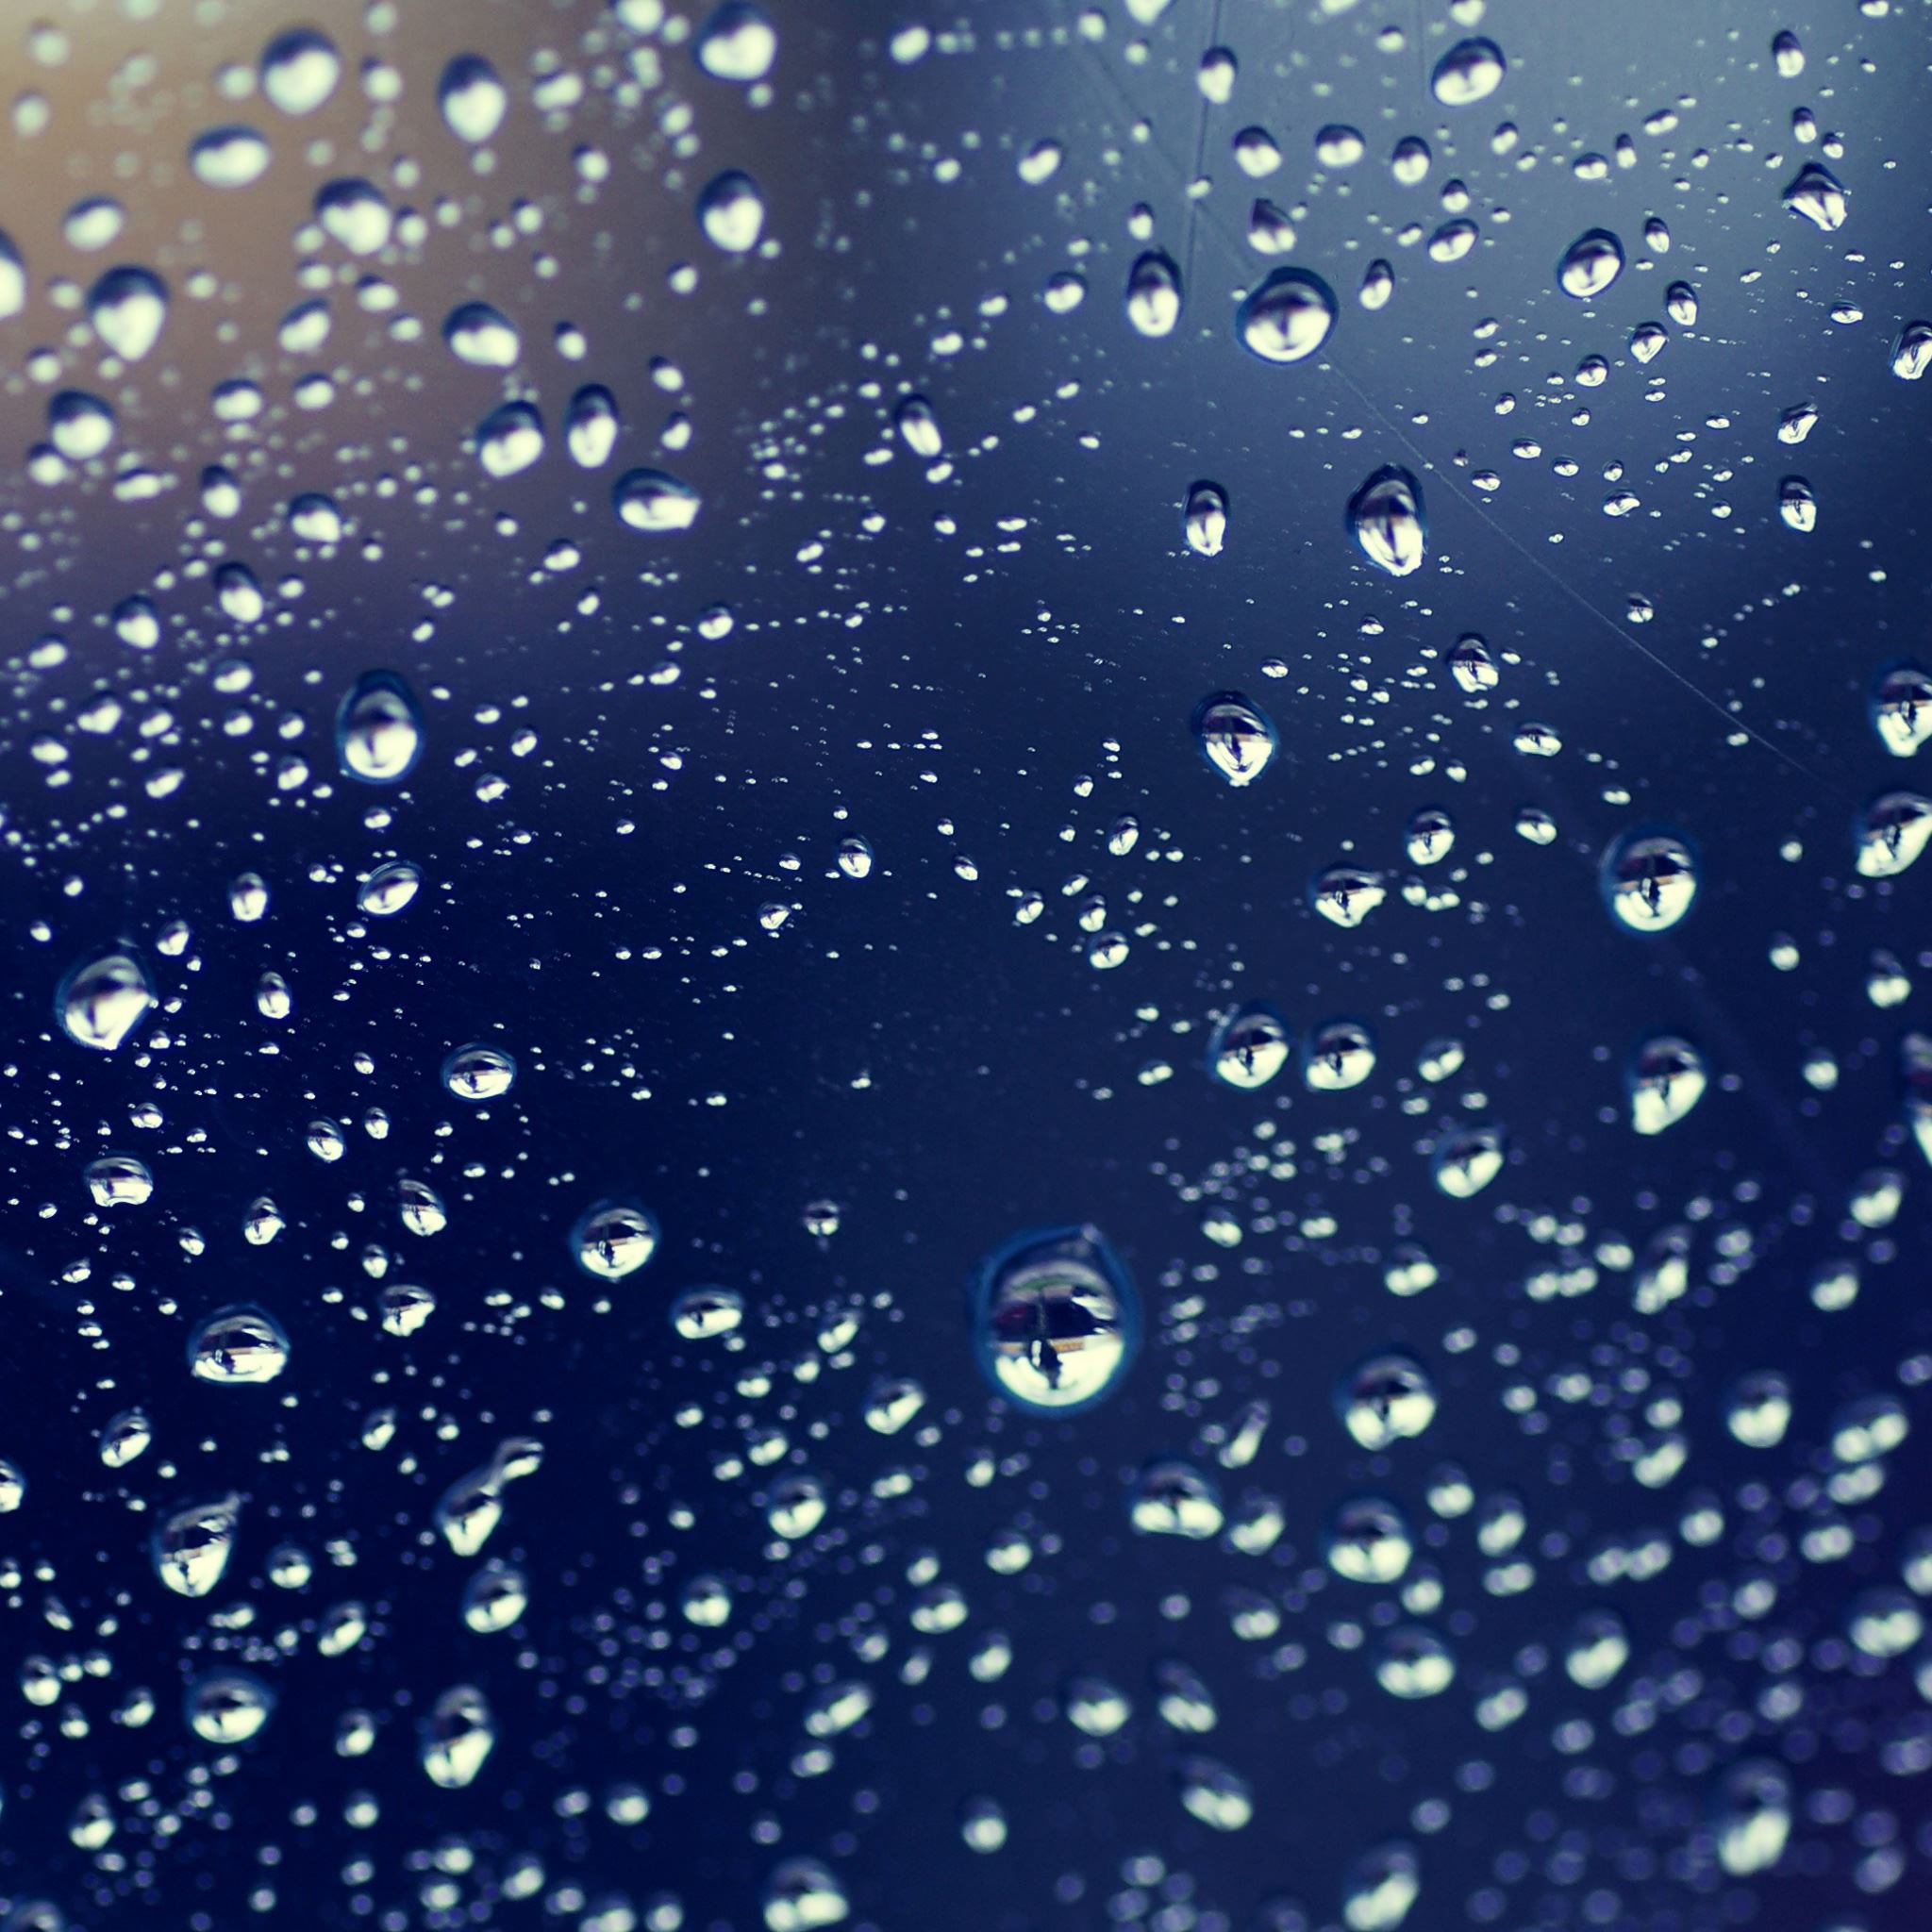 Water Drops Reflections iPad Air wallpaper 